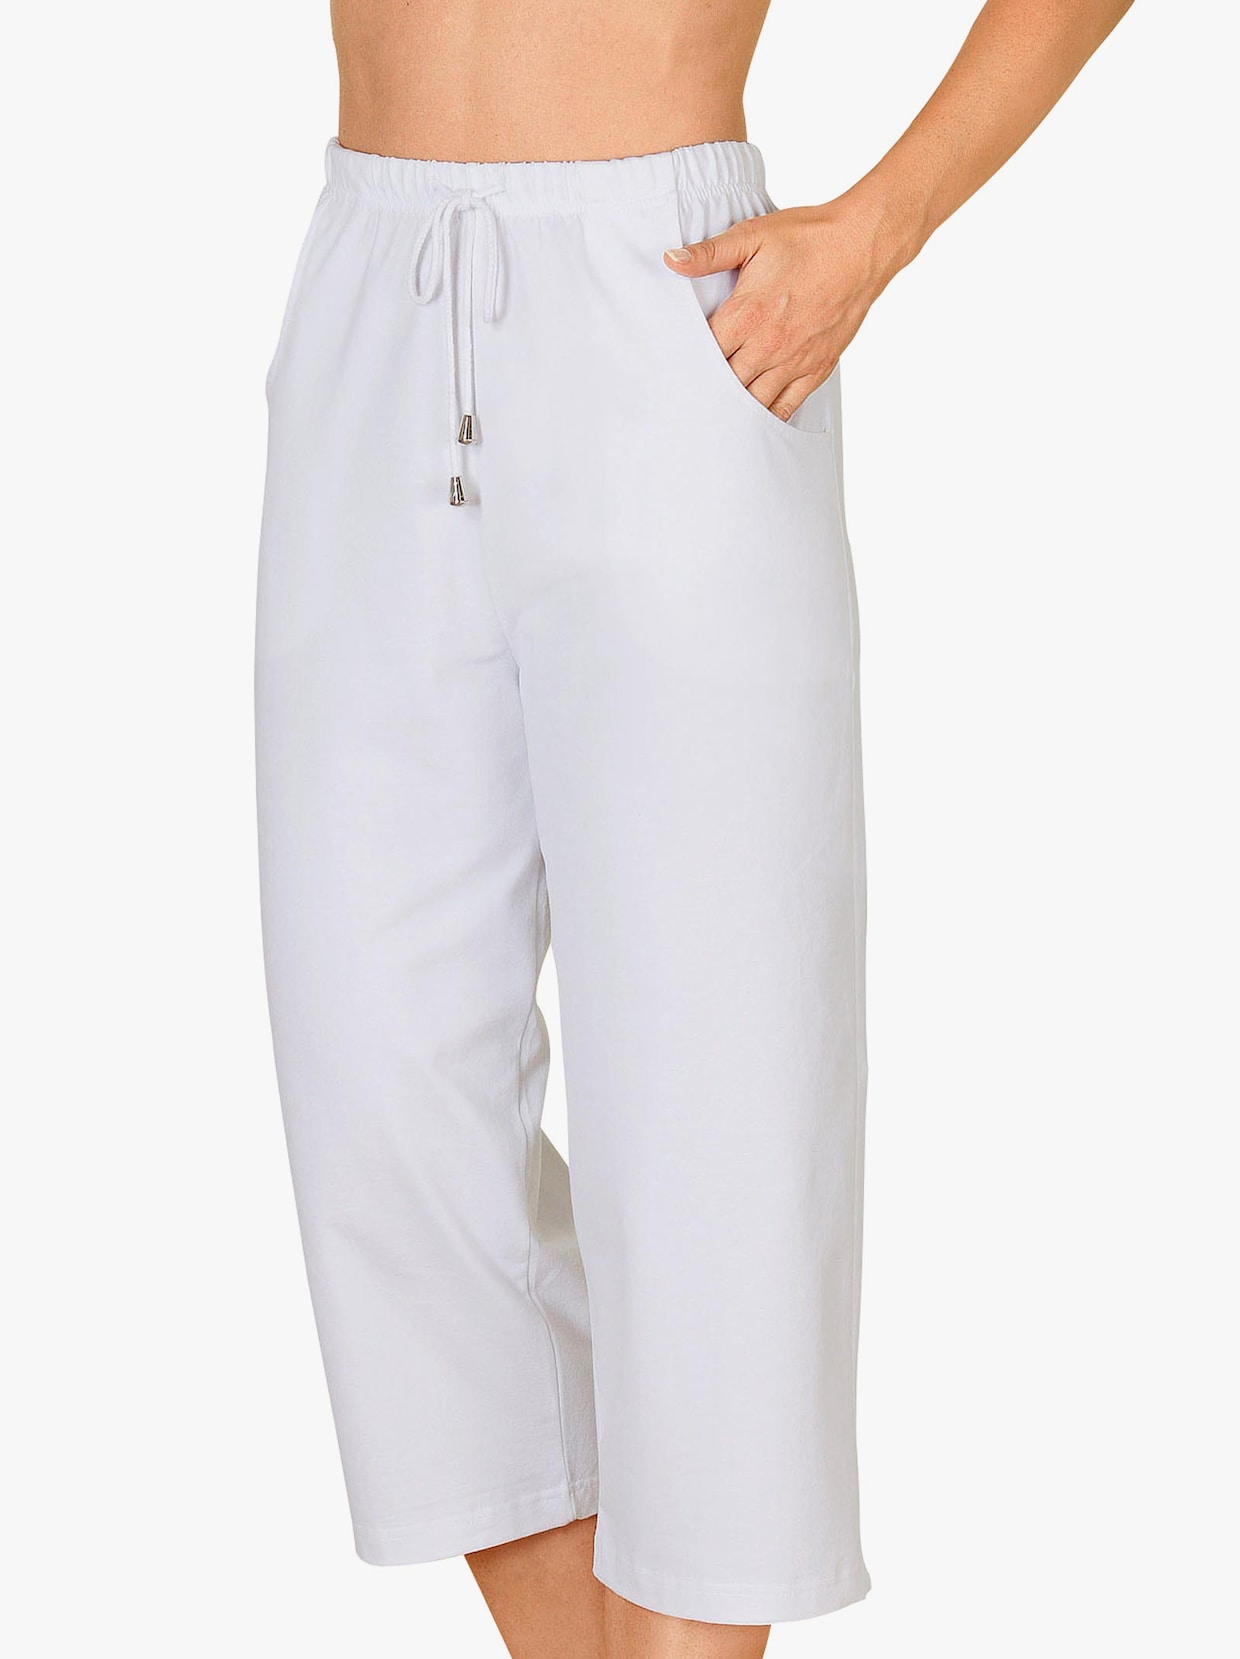 Capri leggings grau - Die besten Capri leggings grau verglichen